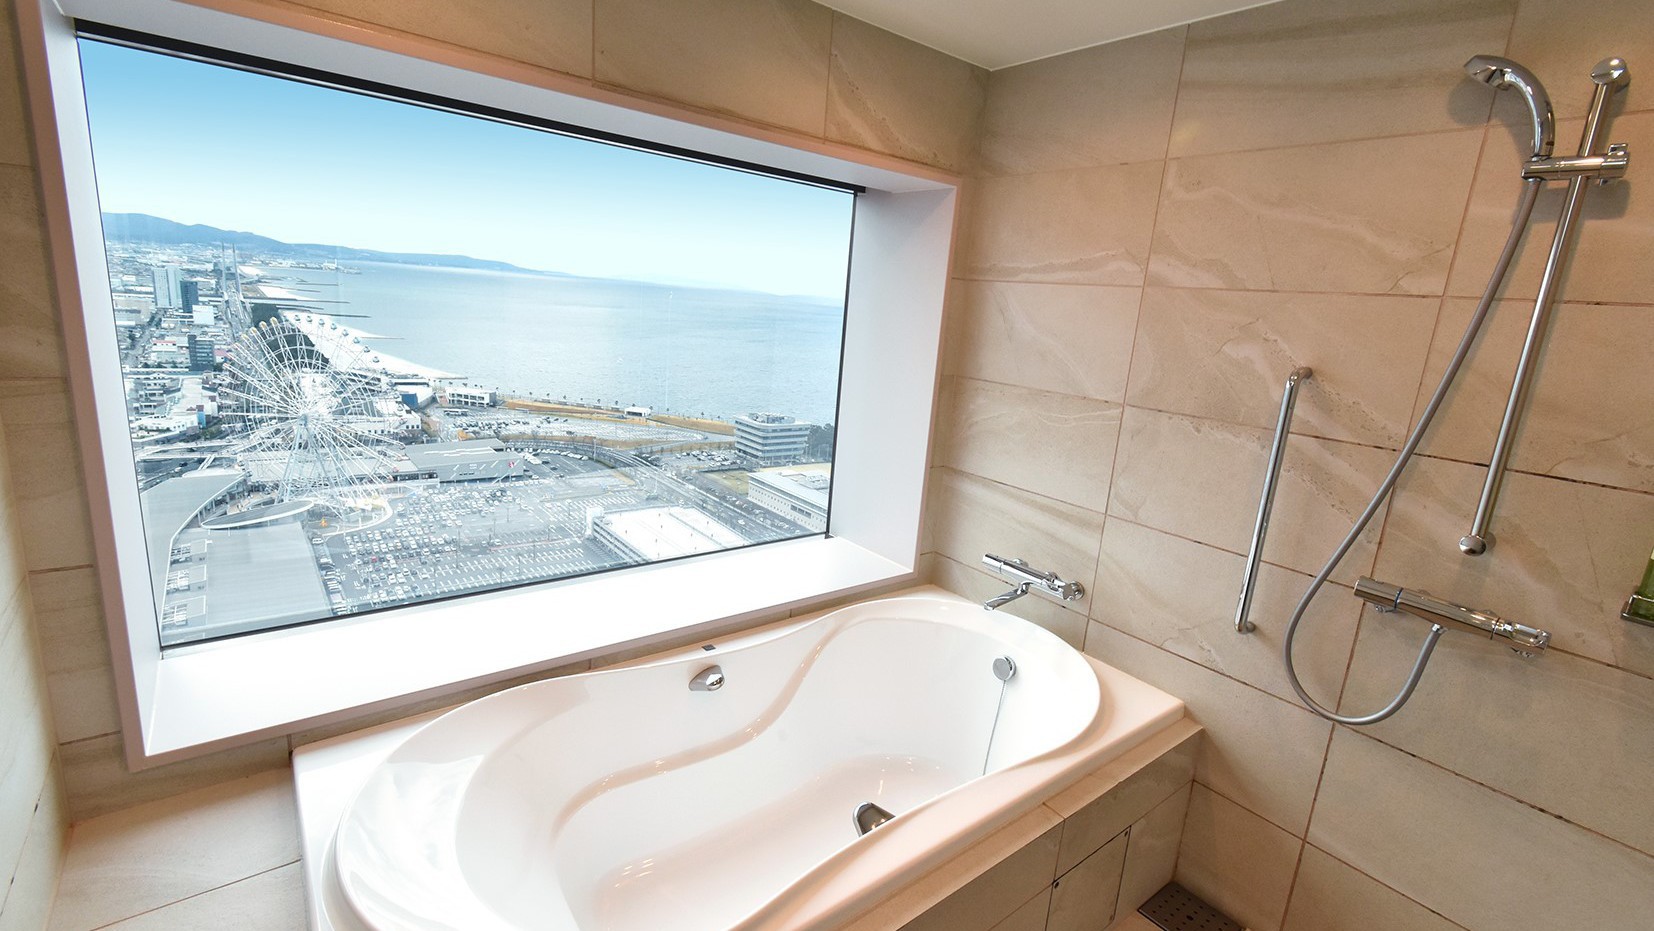 【odysis suite】ビューバスと海・空を見渡せる客室でワンランク上のホテルステイを【朝食付】